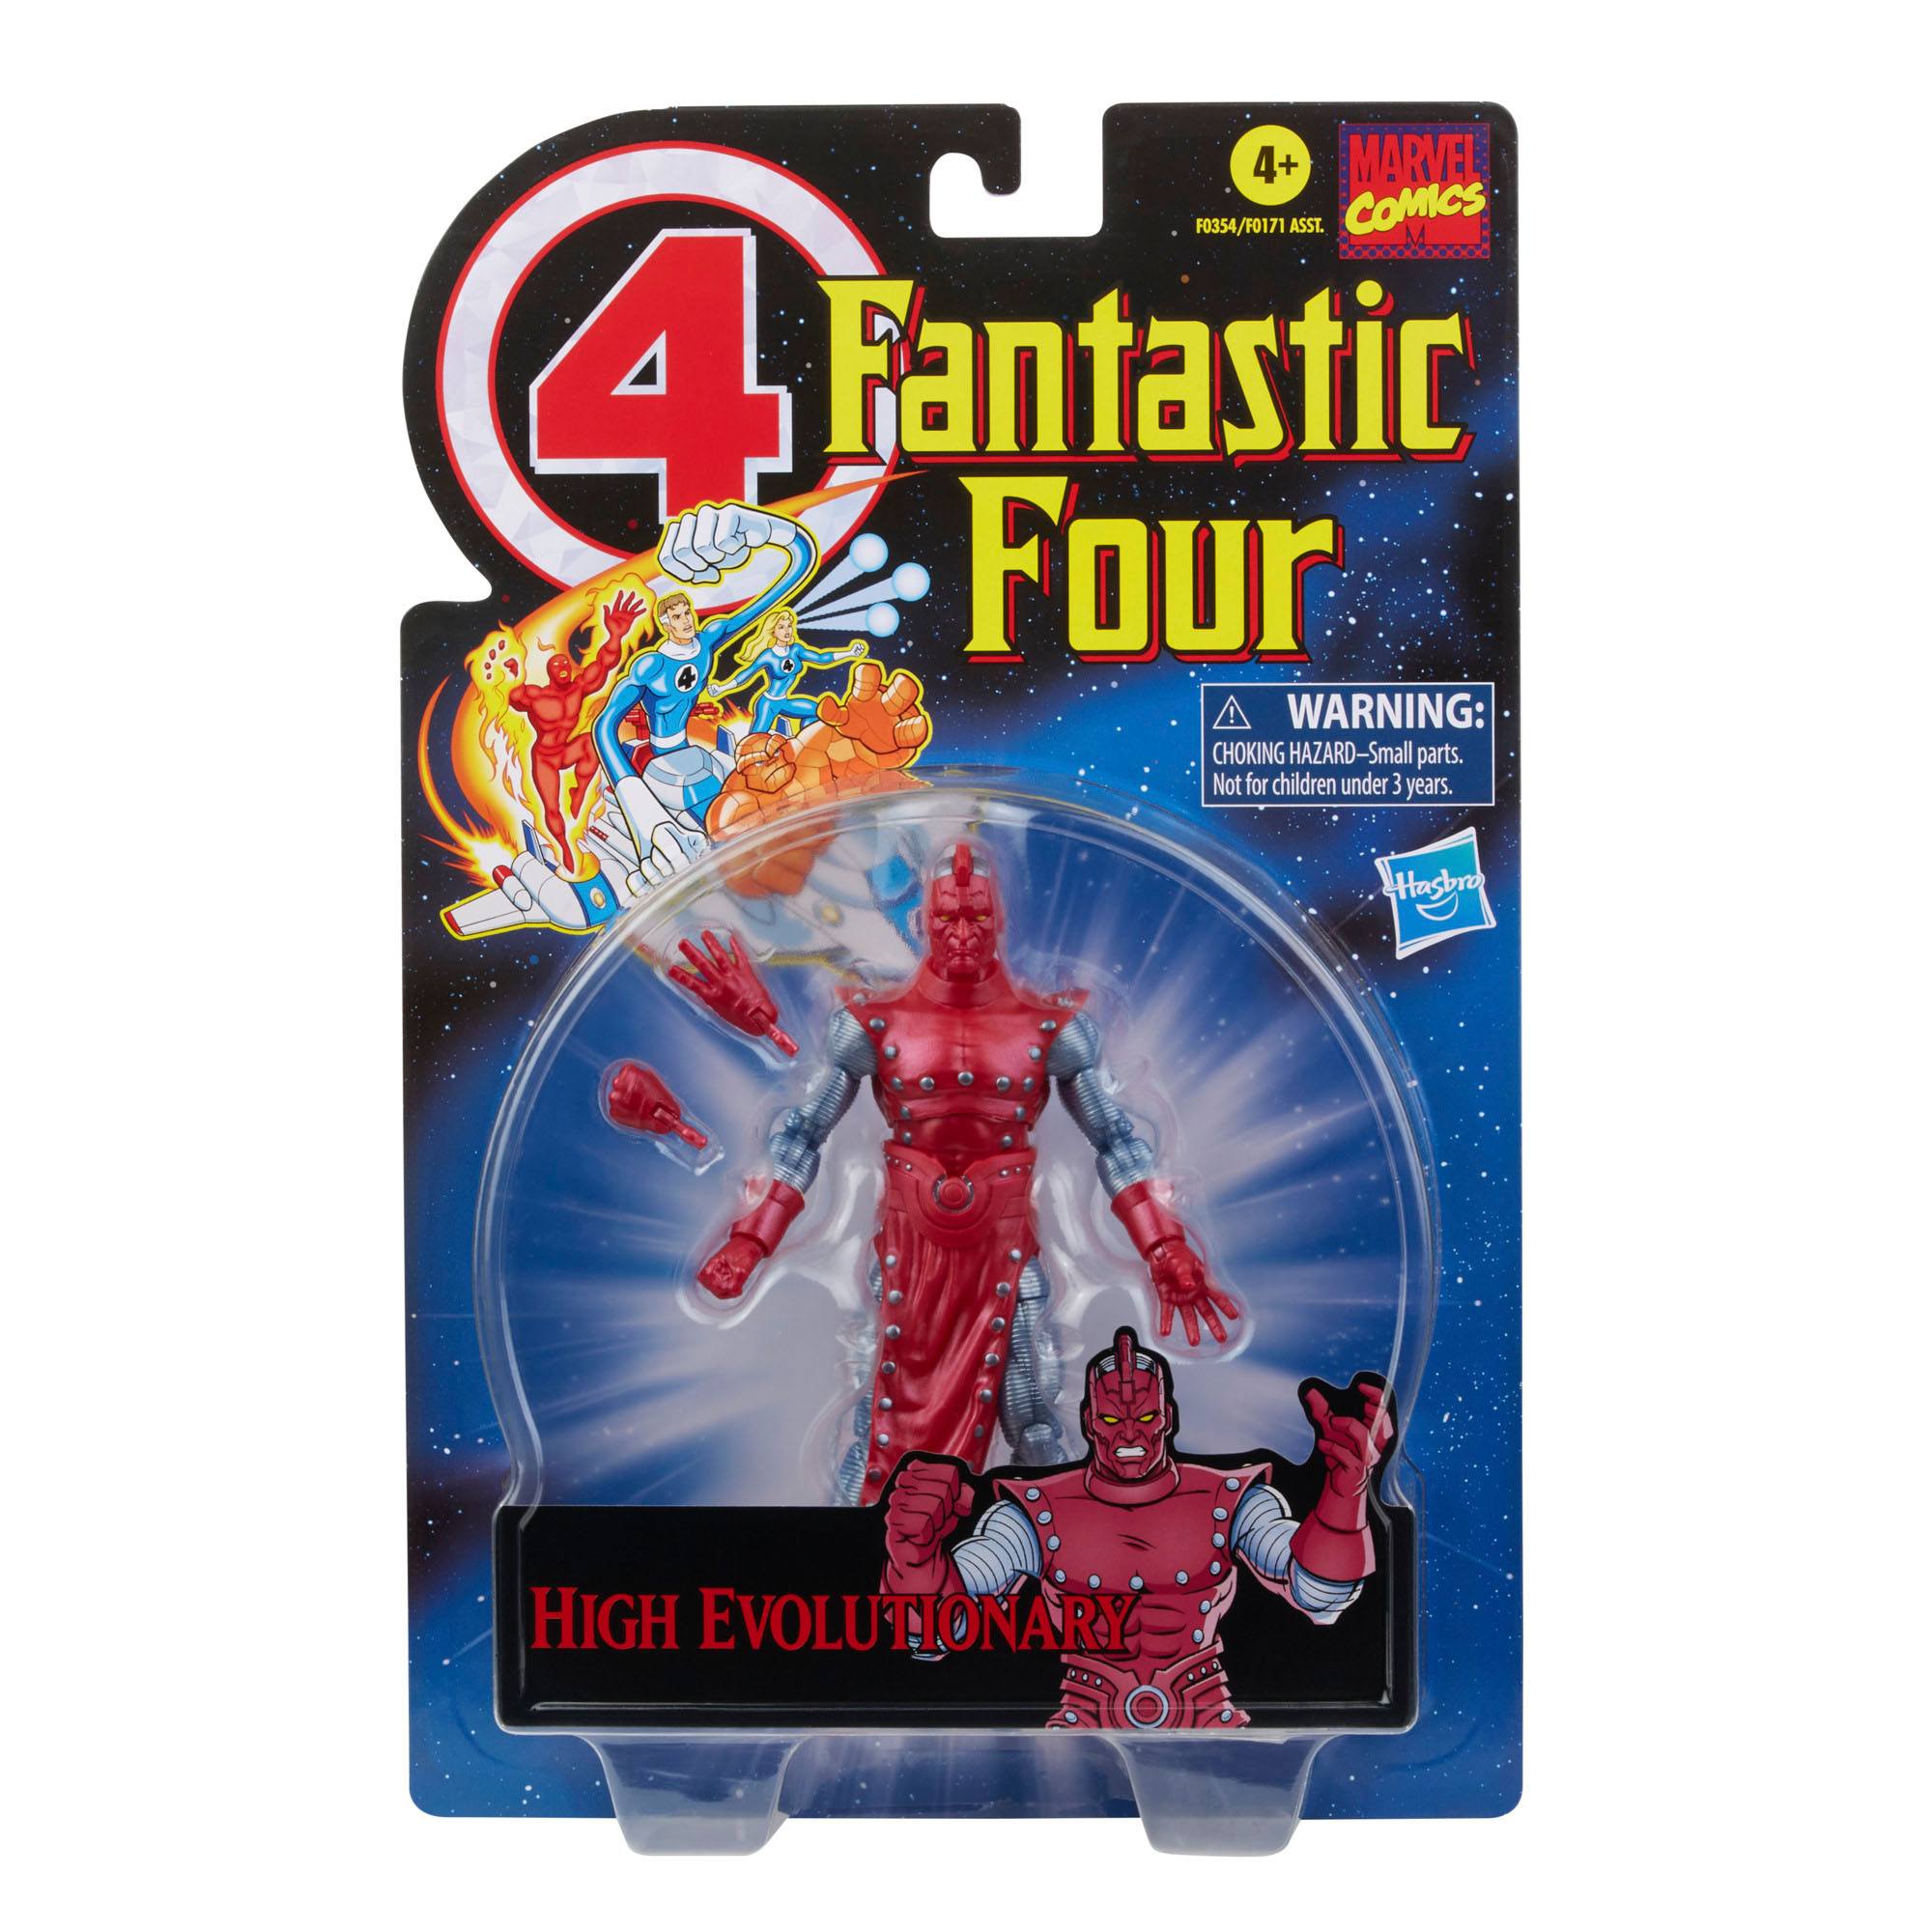 Marvel Legends Retro Collection Actionfiguren 15 cm Fantastic Four 2021 Wave 1 Sortiment (6) F01715L00 5010993842780